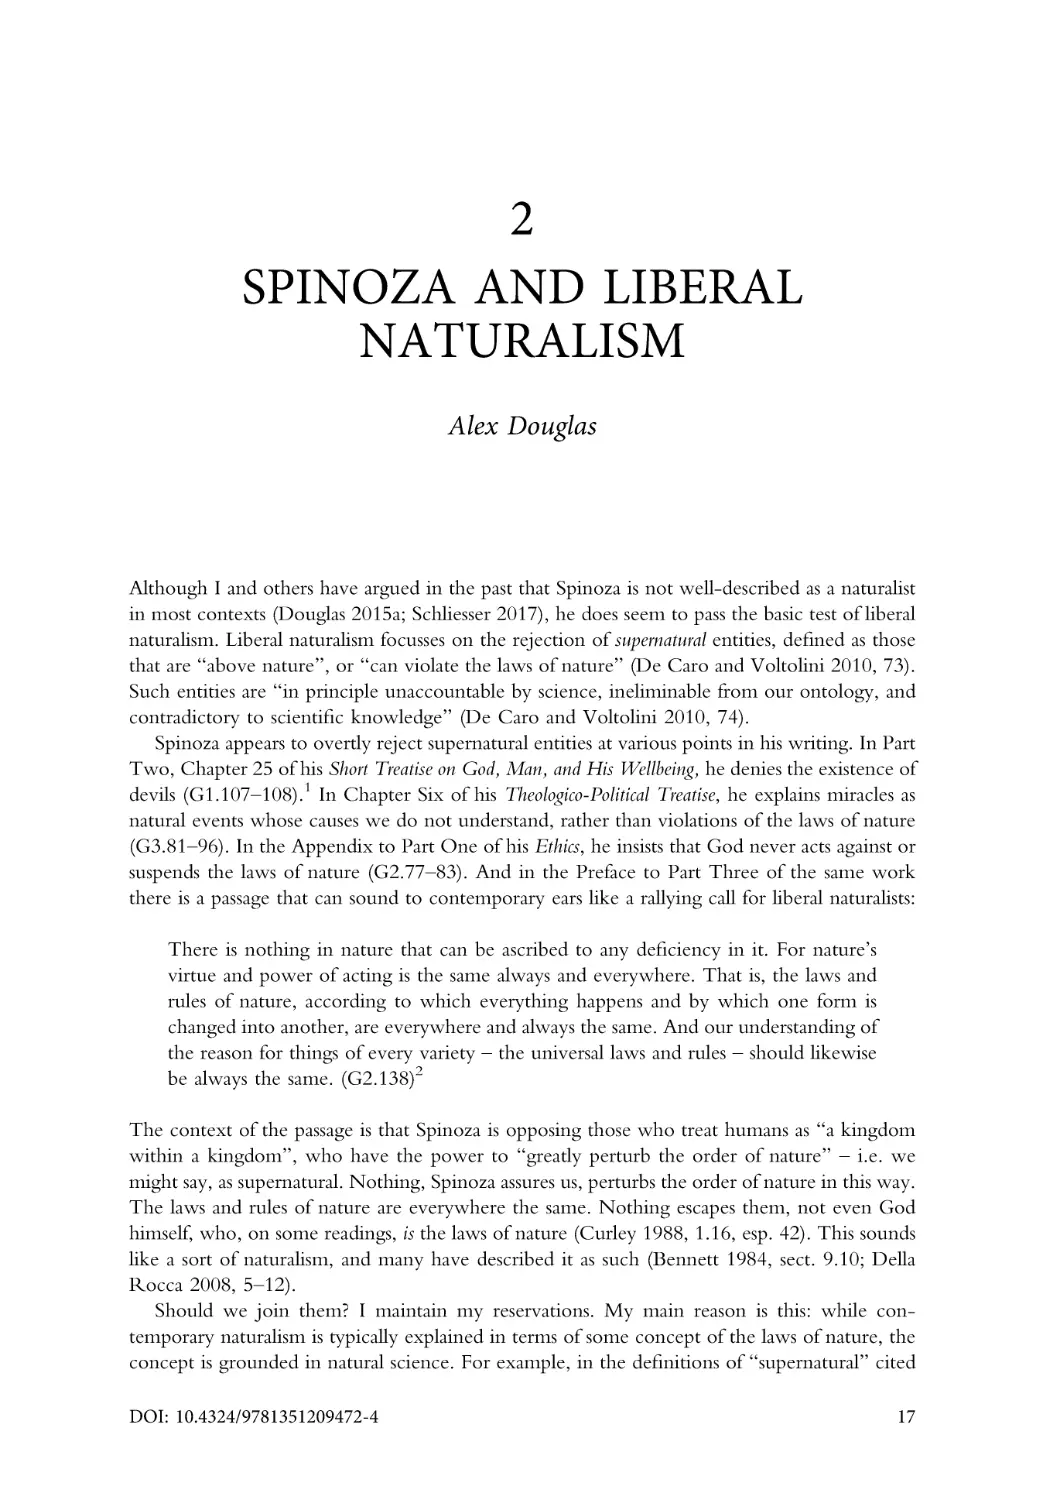 2. Spinoza and liberal naturalism